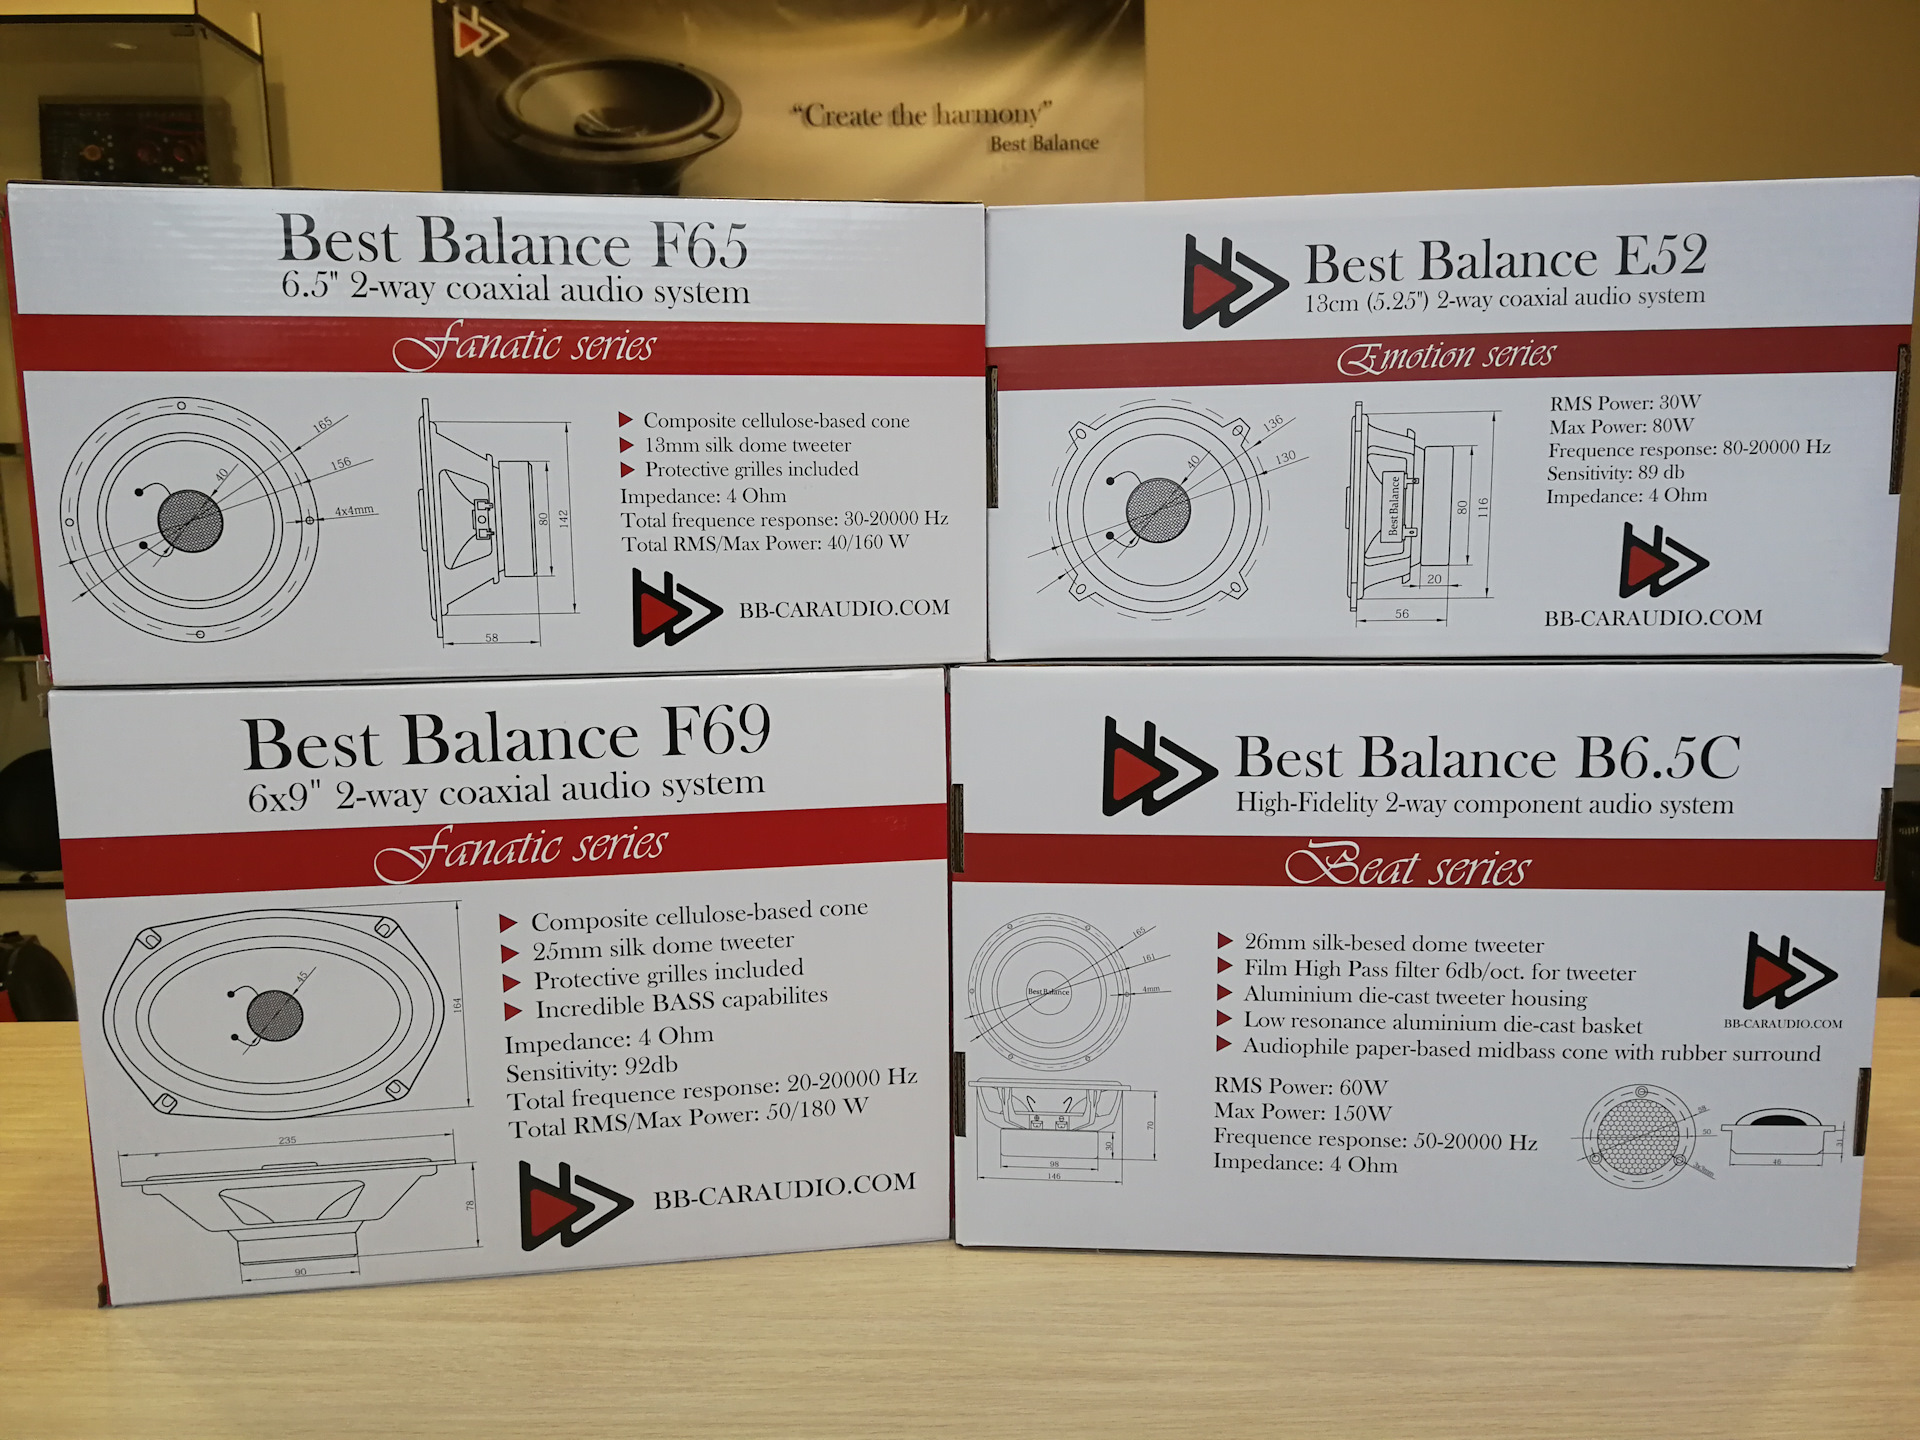 Best Balance b6.5c Размеры. Бест баланс б6.5с. Best Balance b26t Размеры. Динамики best Balance e52.